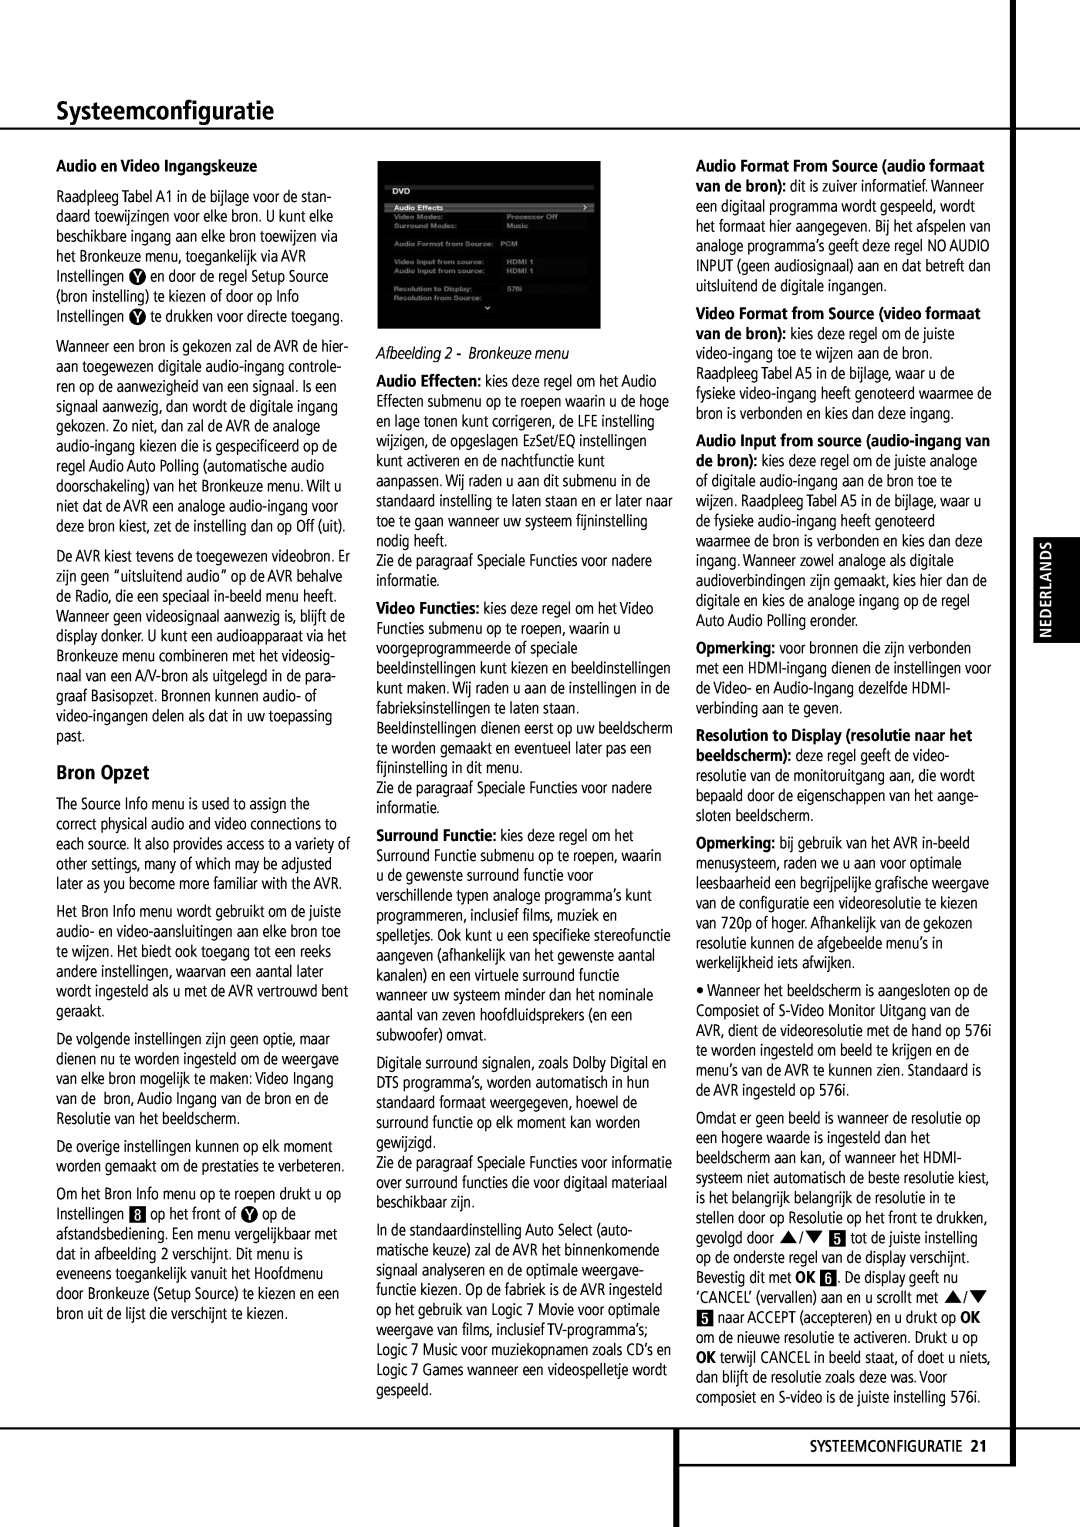 Harman-Kardon 355 Bron Opzet, Systeemconfiguratie, Audio en Video Ingangskeuze, Afbeelding 2 - Bronkeuze menu, Nederlands 